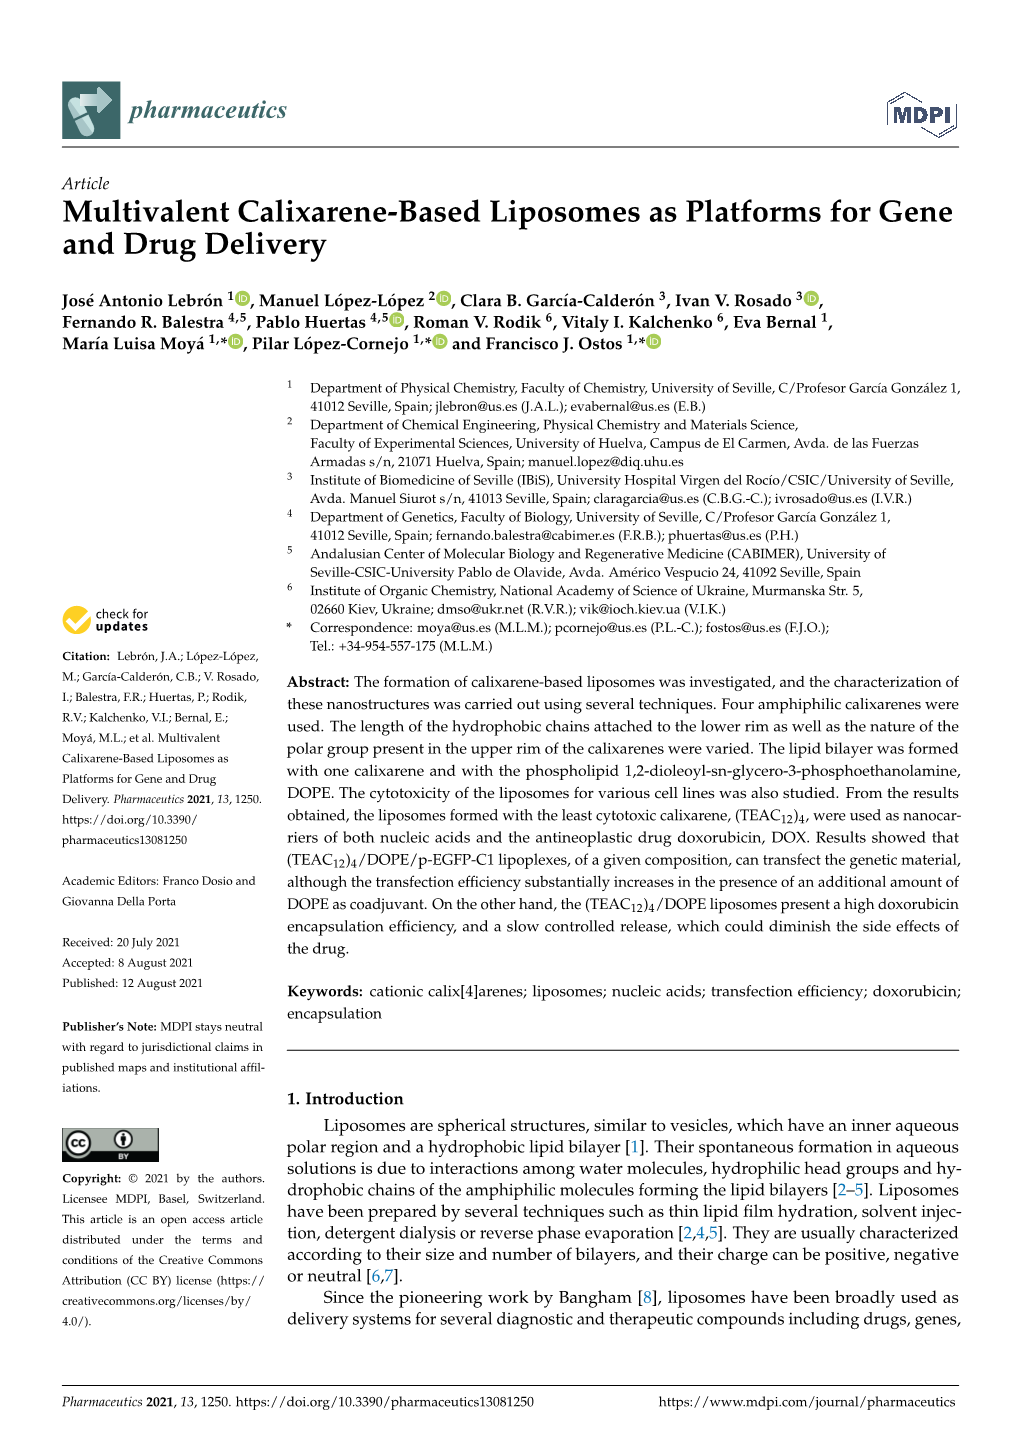 Multivalent Calixarene-Based Liposomes As Platforms for Gene and Drug Delivery